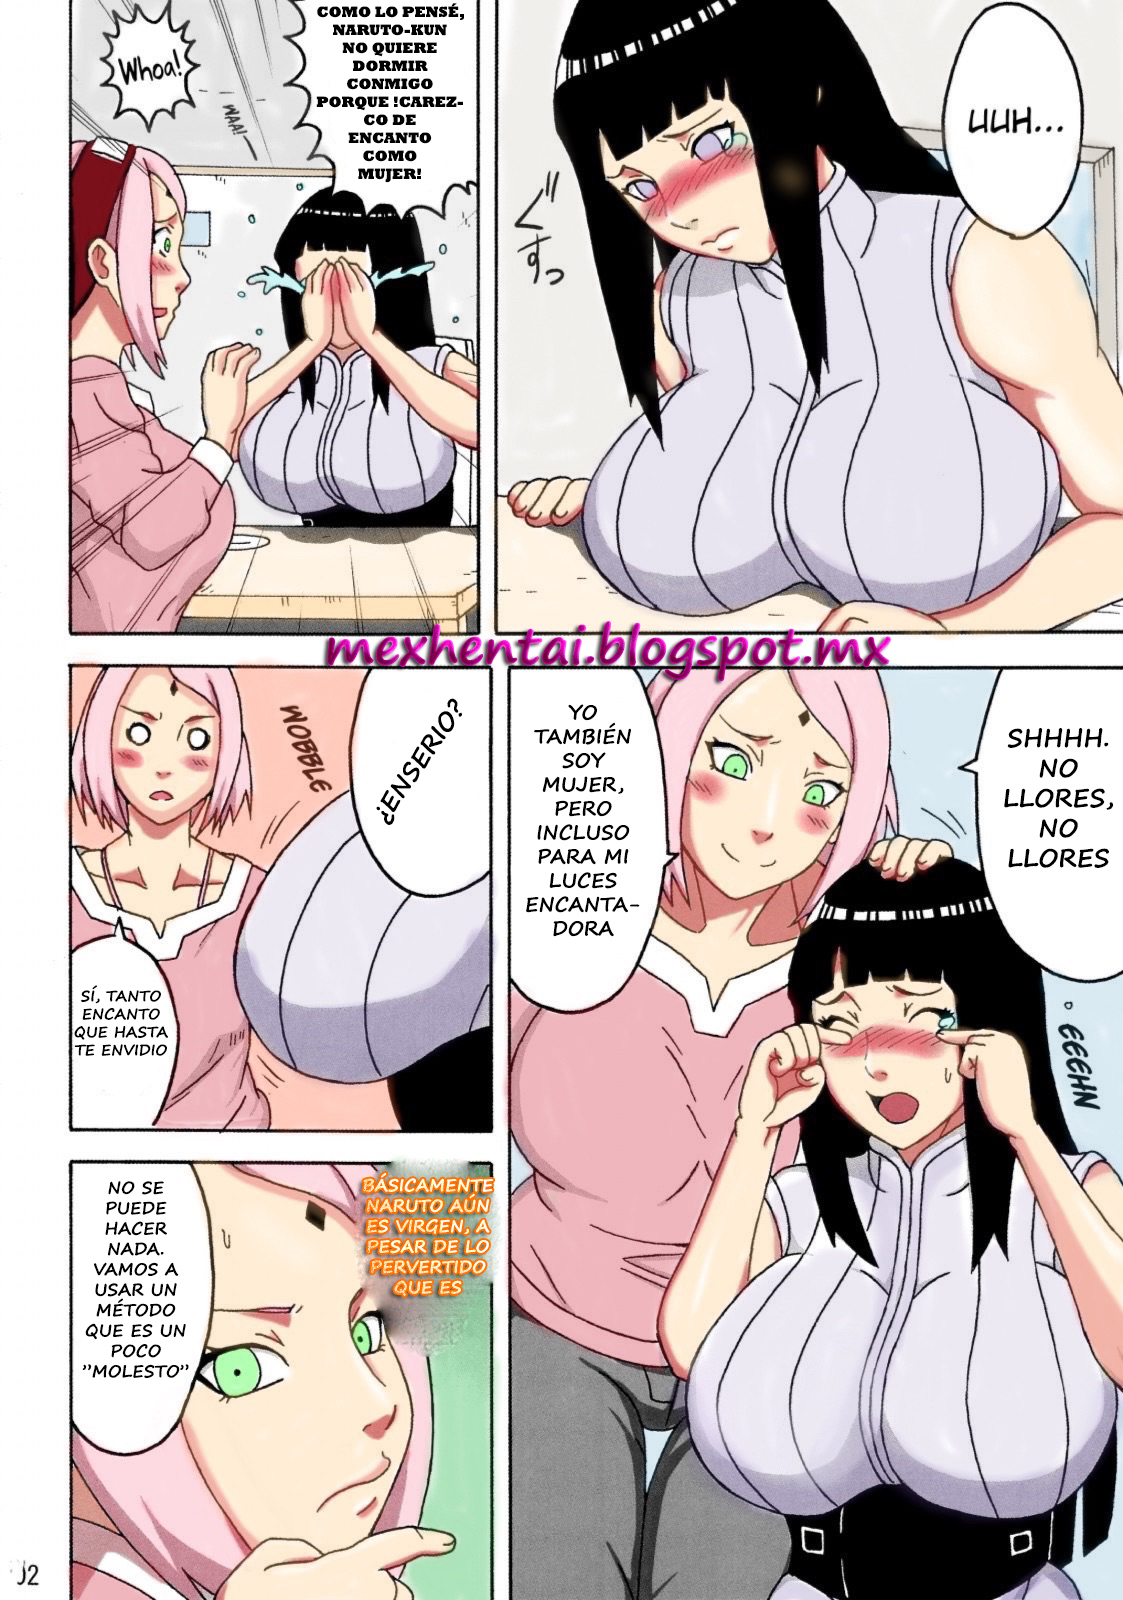 Hinata Follando con Naruto Adictos al sexo diario - follando-hinata-naruto-xxx-historieta-sexo-jutsu-clones-vagina-tetas-desnudos-video-imagenes (3)